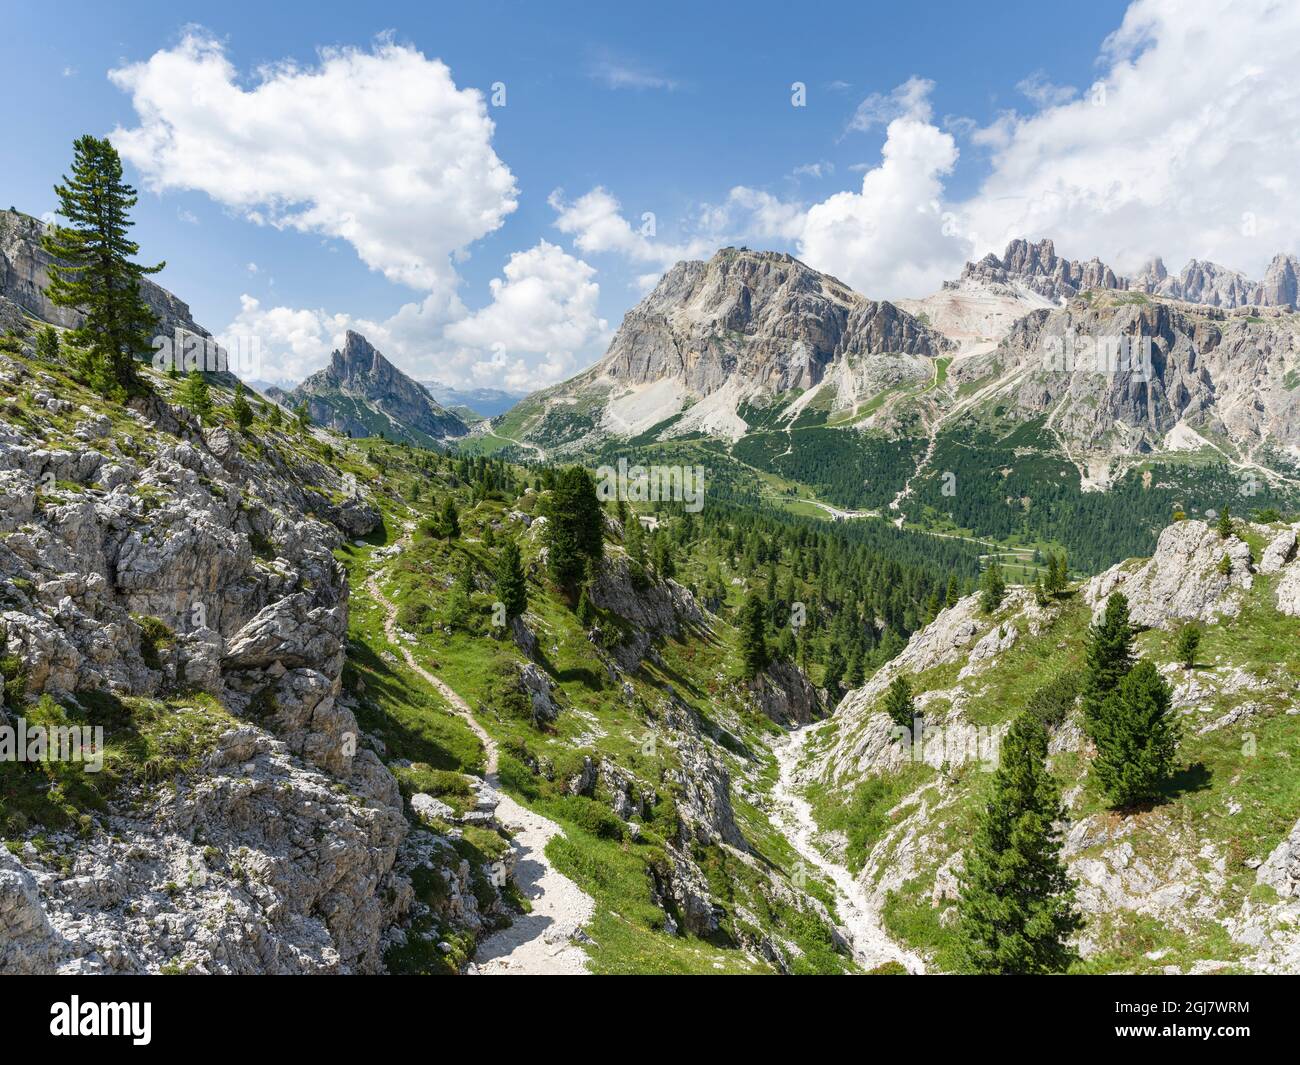 Dolomites à Passo Falzarego, Lagazuoi, Fanes et Monte Cavallo dans le parc naturel Fanes Sennes Prags, qui fait partie du site du patrimoine mondial de l'UNESCO le Dolo Banque D'Images